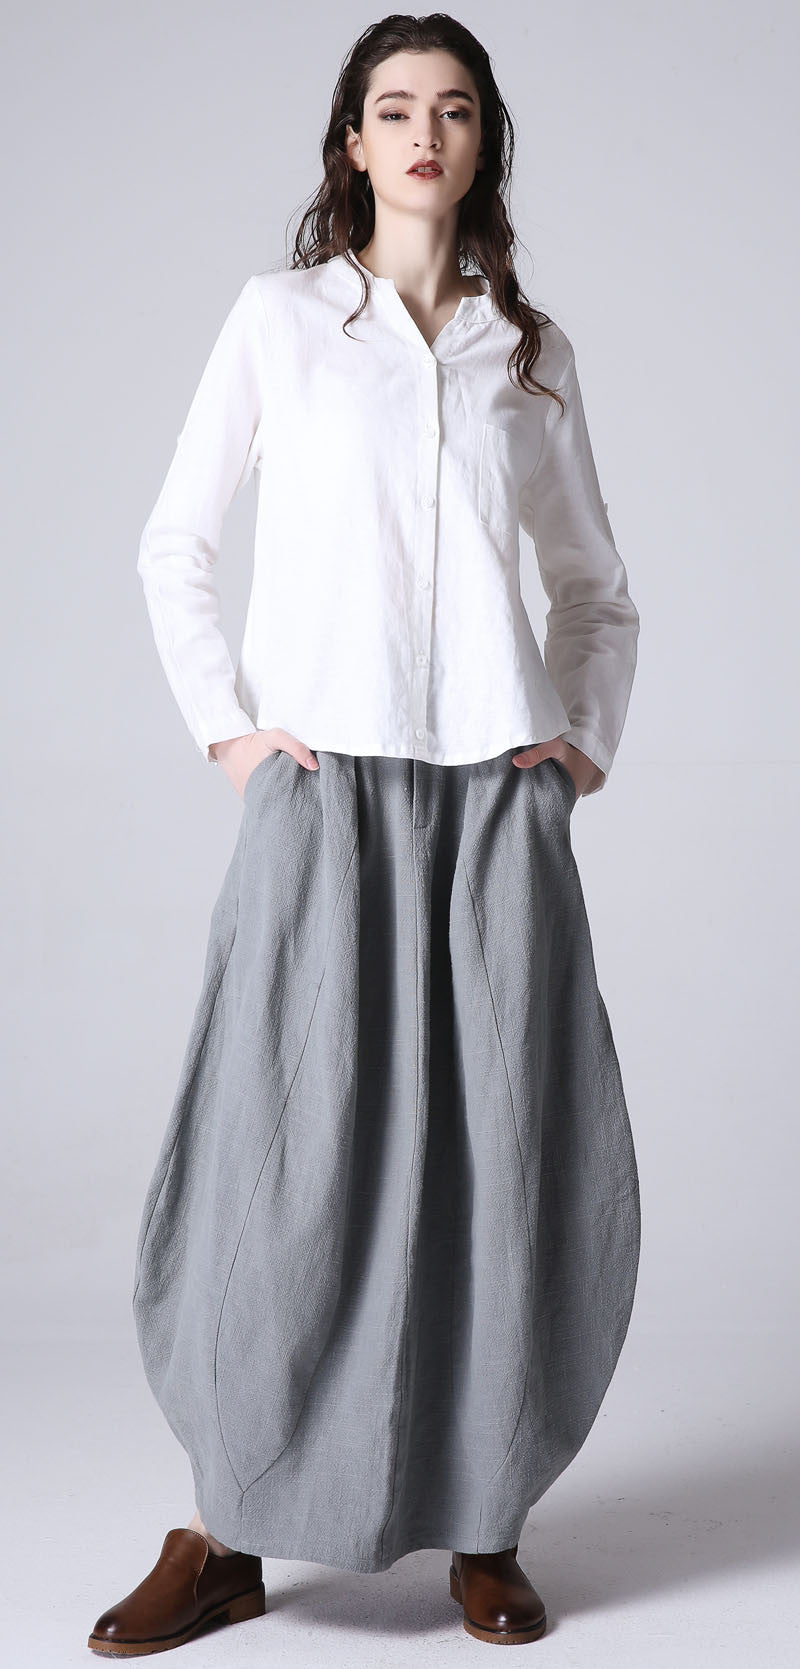 women's casual bubble skirt in light grey1192#